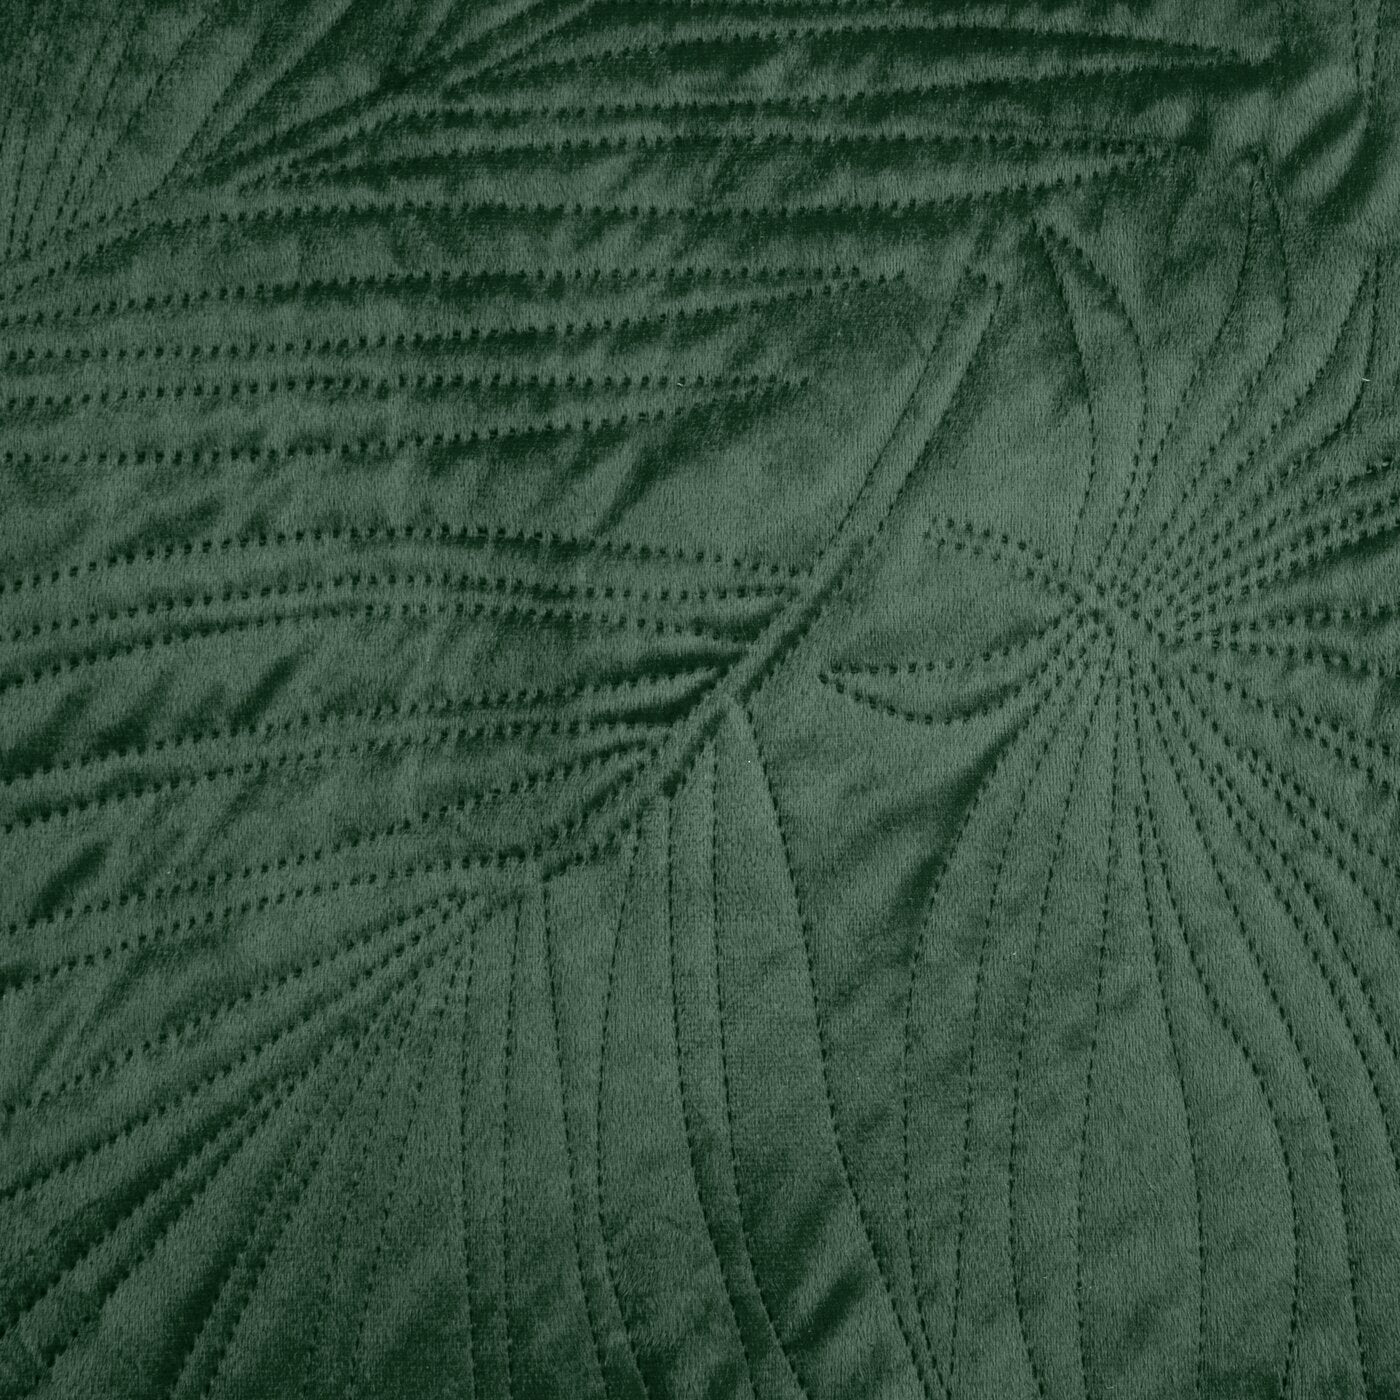 Cuvertură de Pat din catifea matlasată prin presare la cald cu model de frunze de palmier verde închis LUIZ Perdele de Poveste